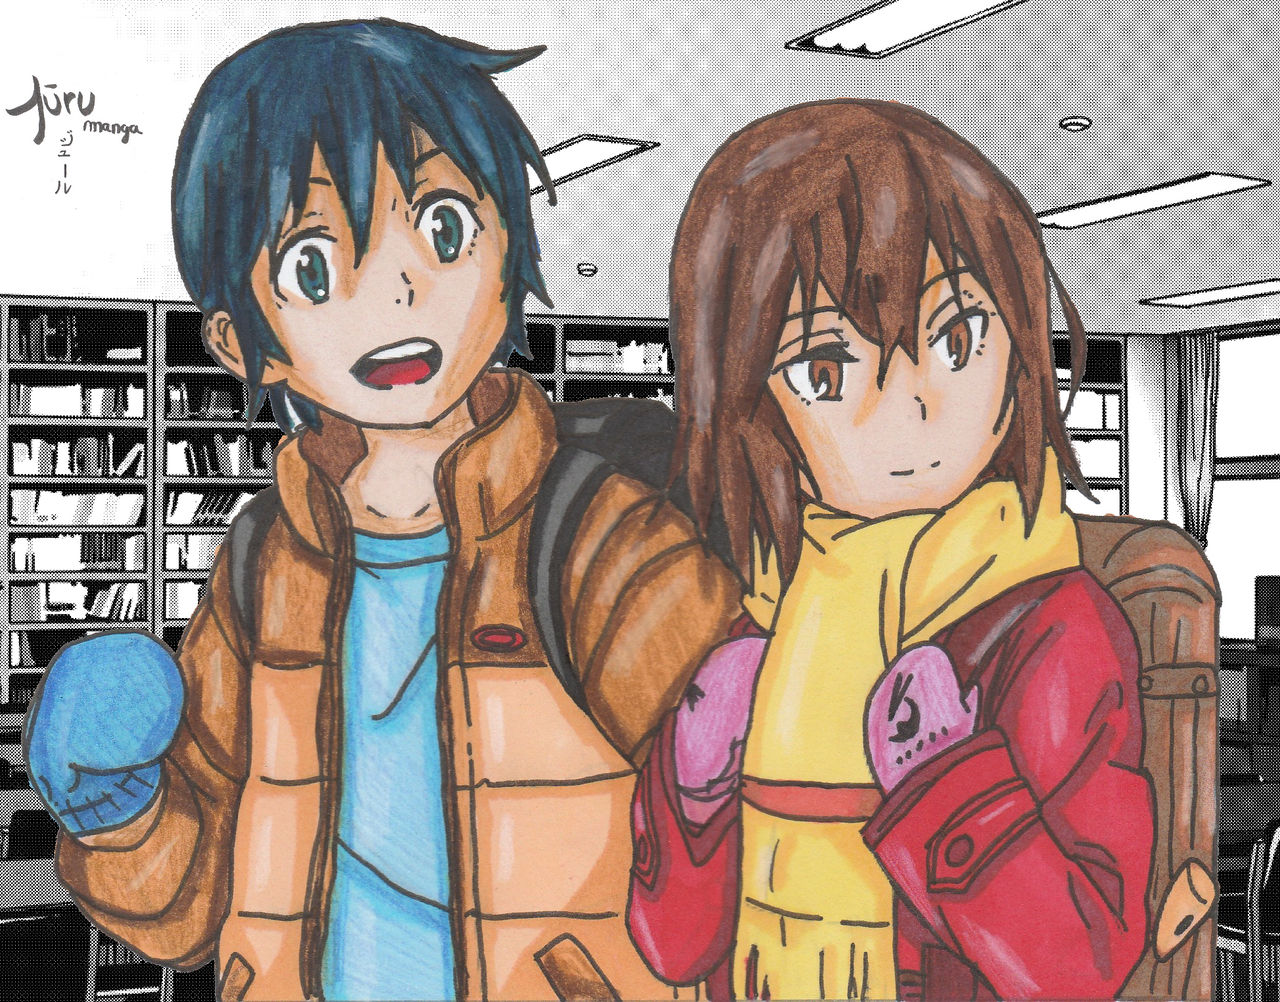 Hinazuki Kayo and Fujinama Satoru (Erased) by jUrUmanga4 on DeviantArt